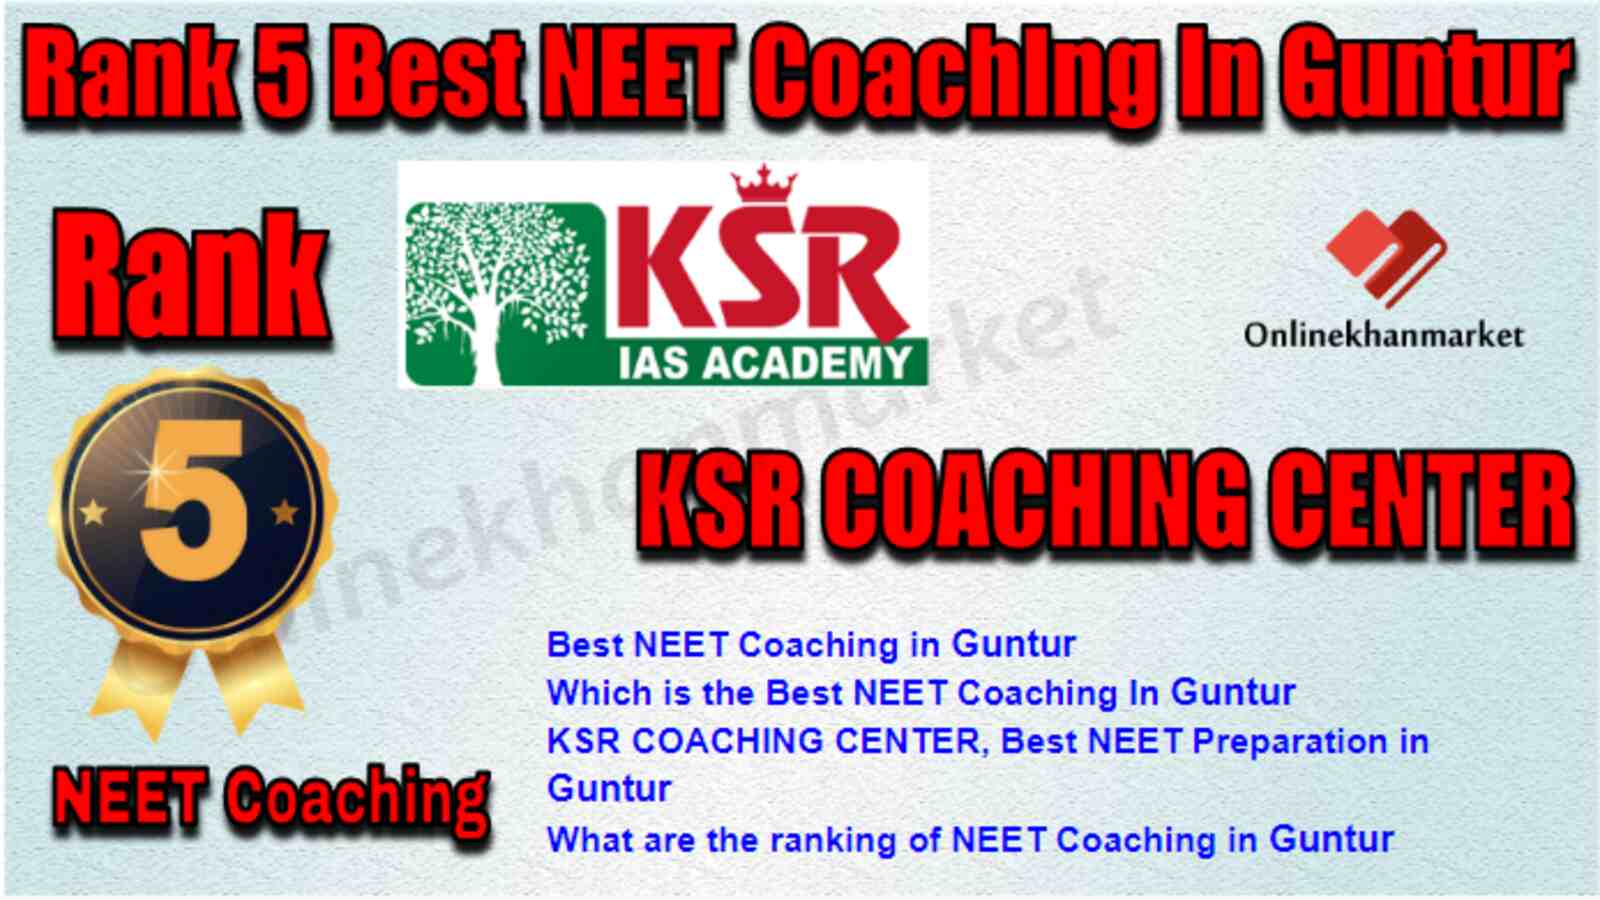 Rank 5 Best NEET Coaching in Guntur